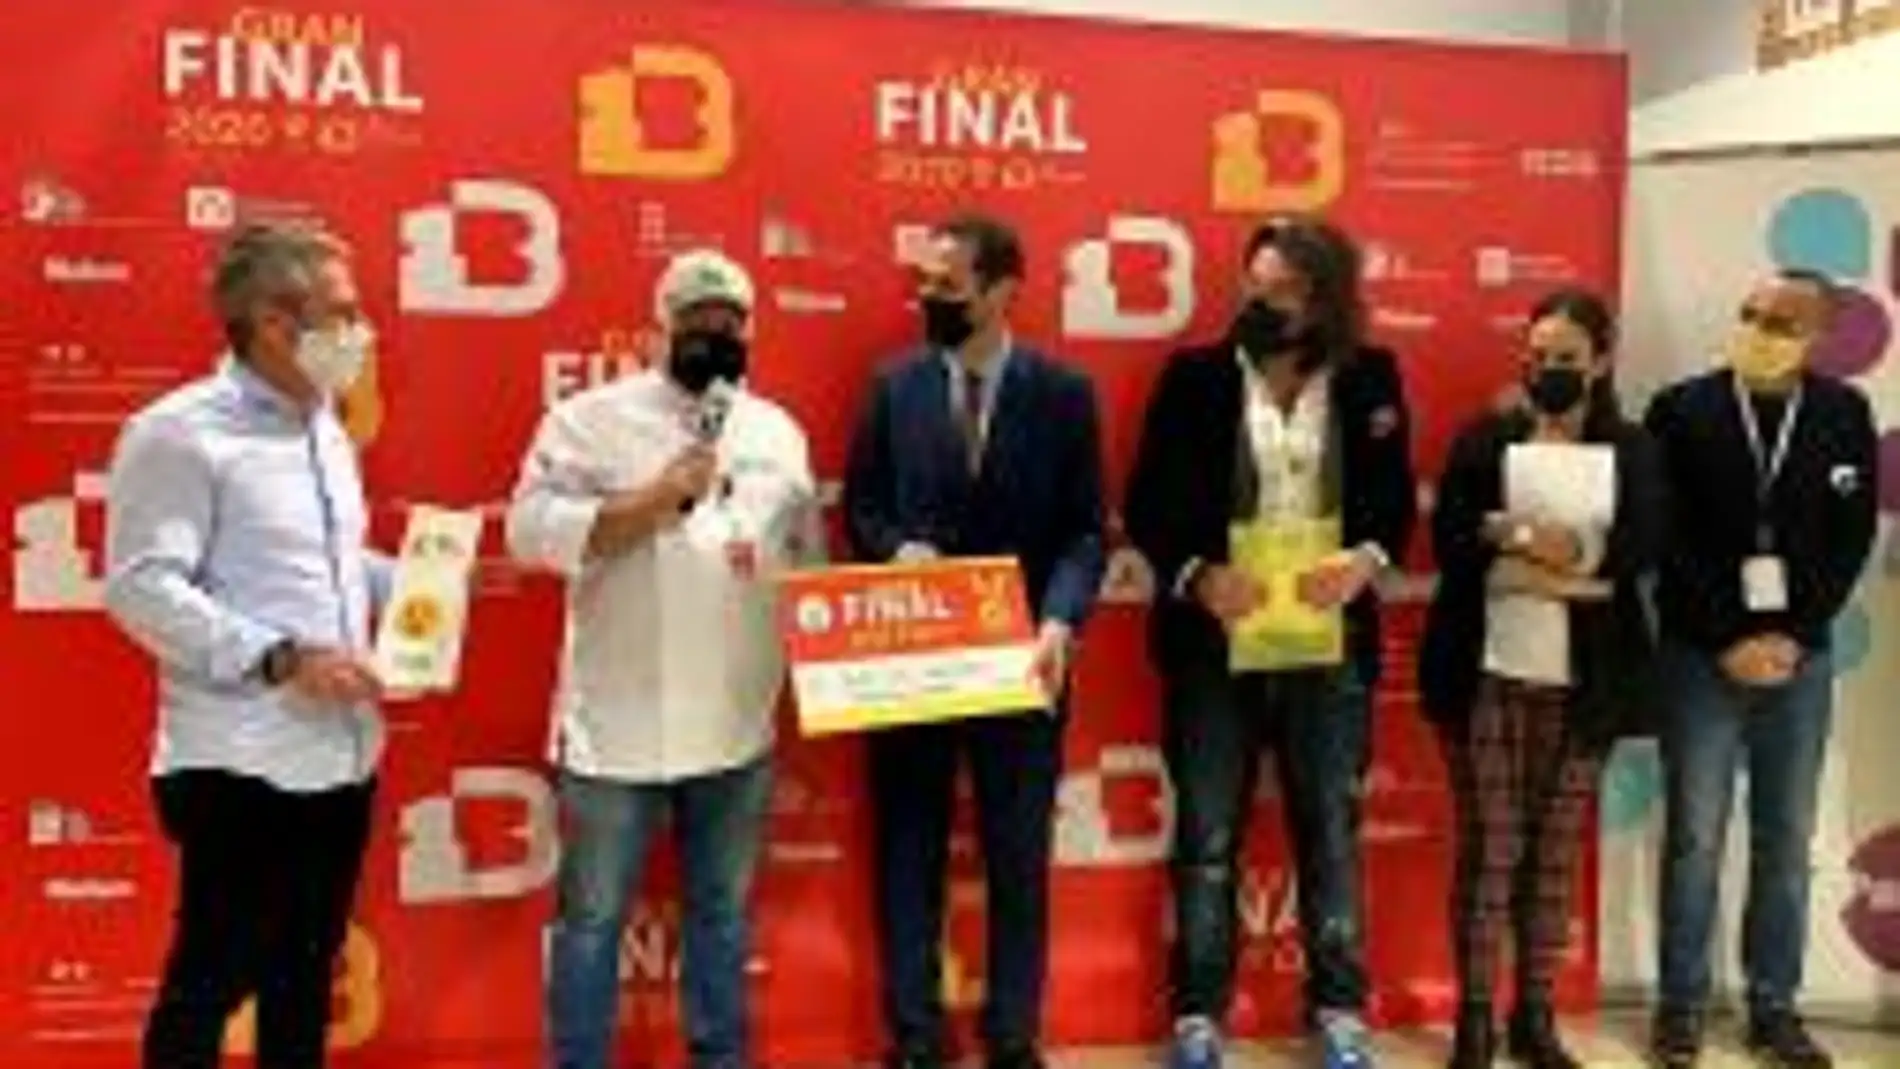  José Luis Martínez de 'Taberna&Media' de Madrid ganador del Concurso Internacional de Elaboración de Patatas Bravas